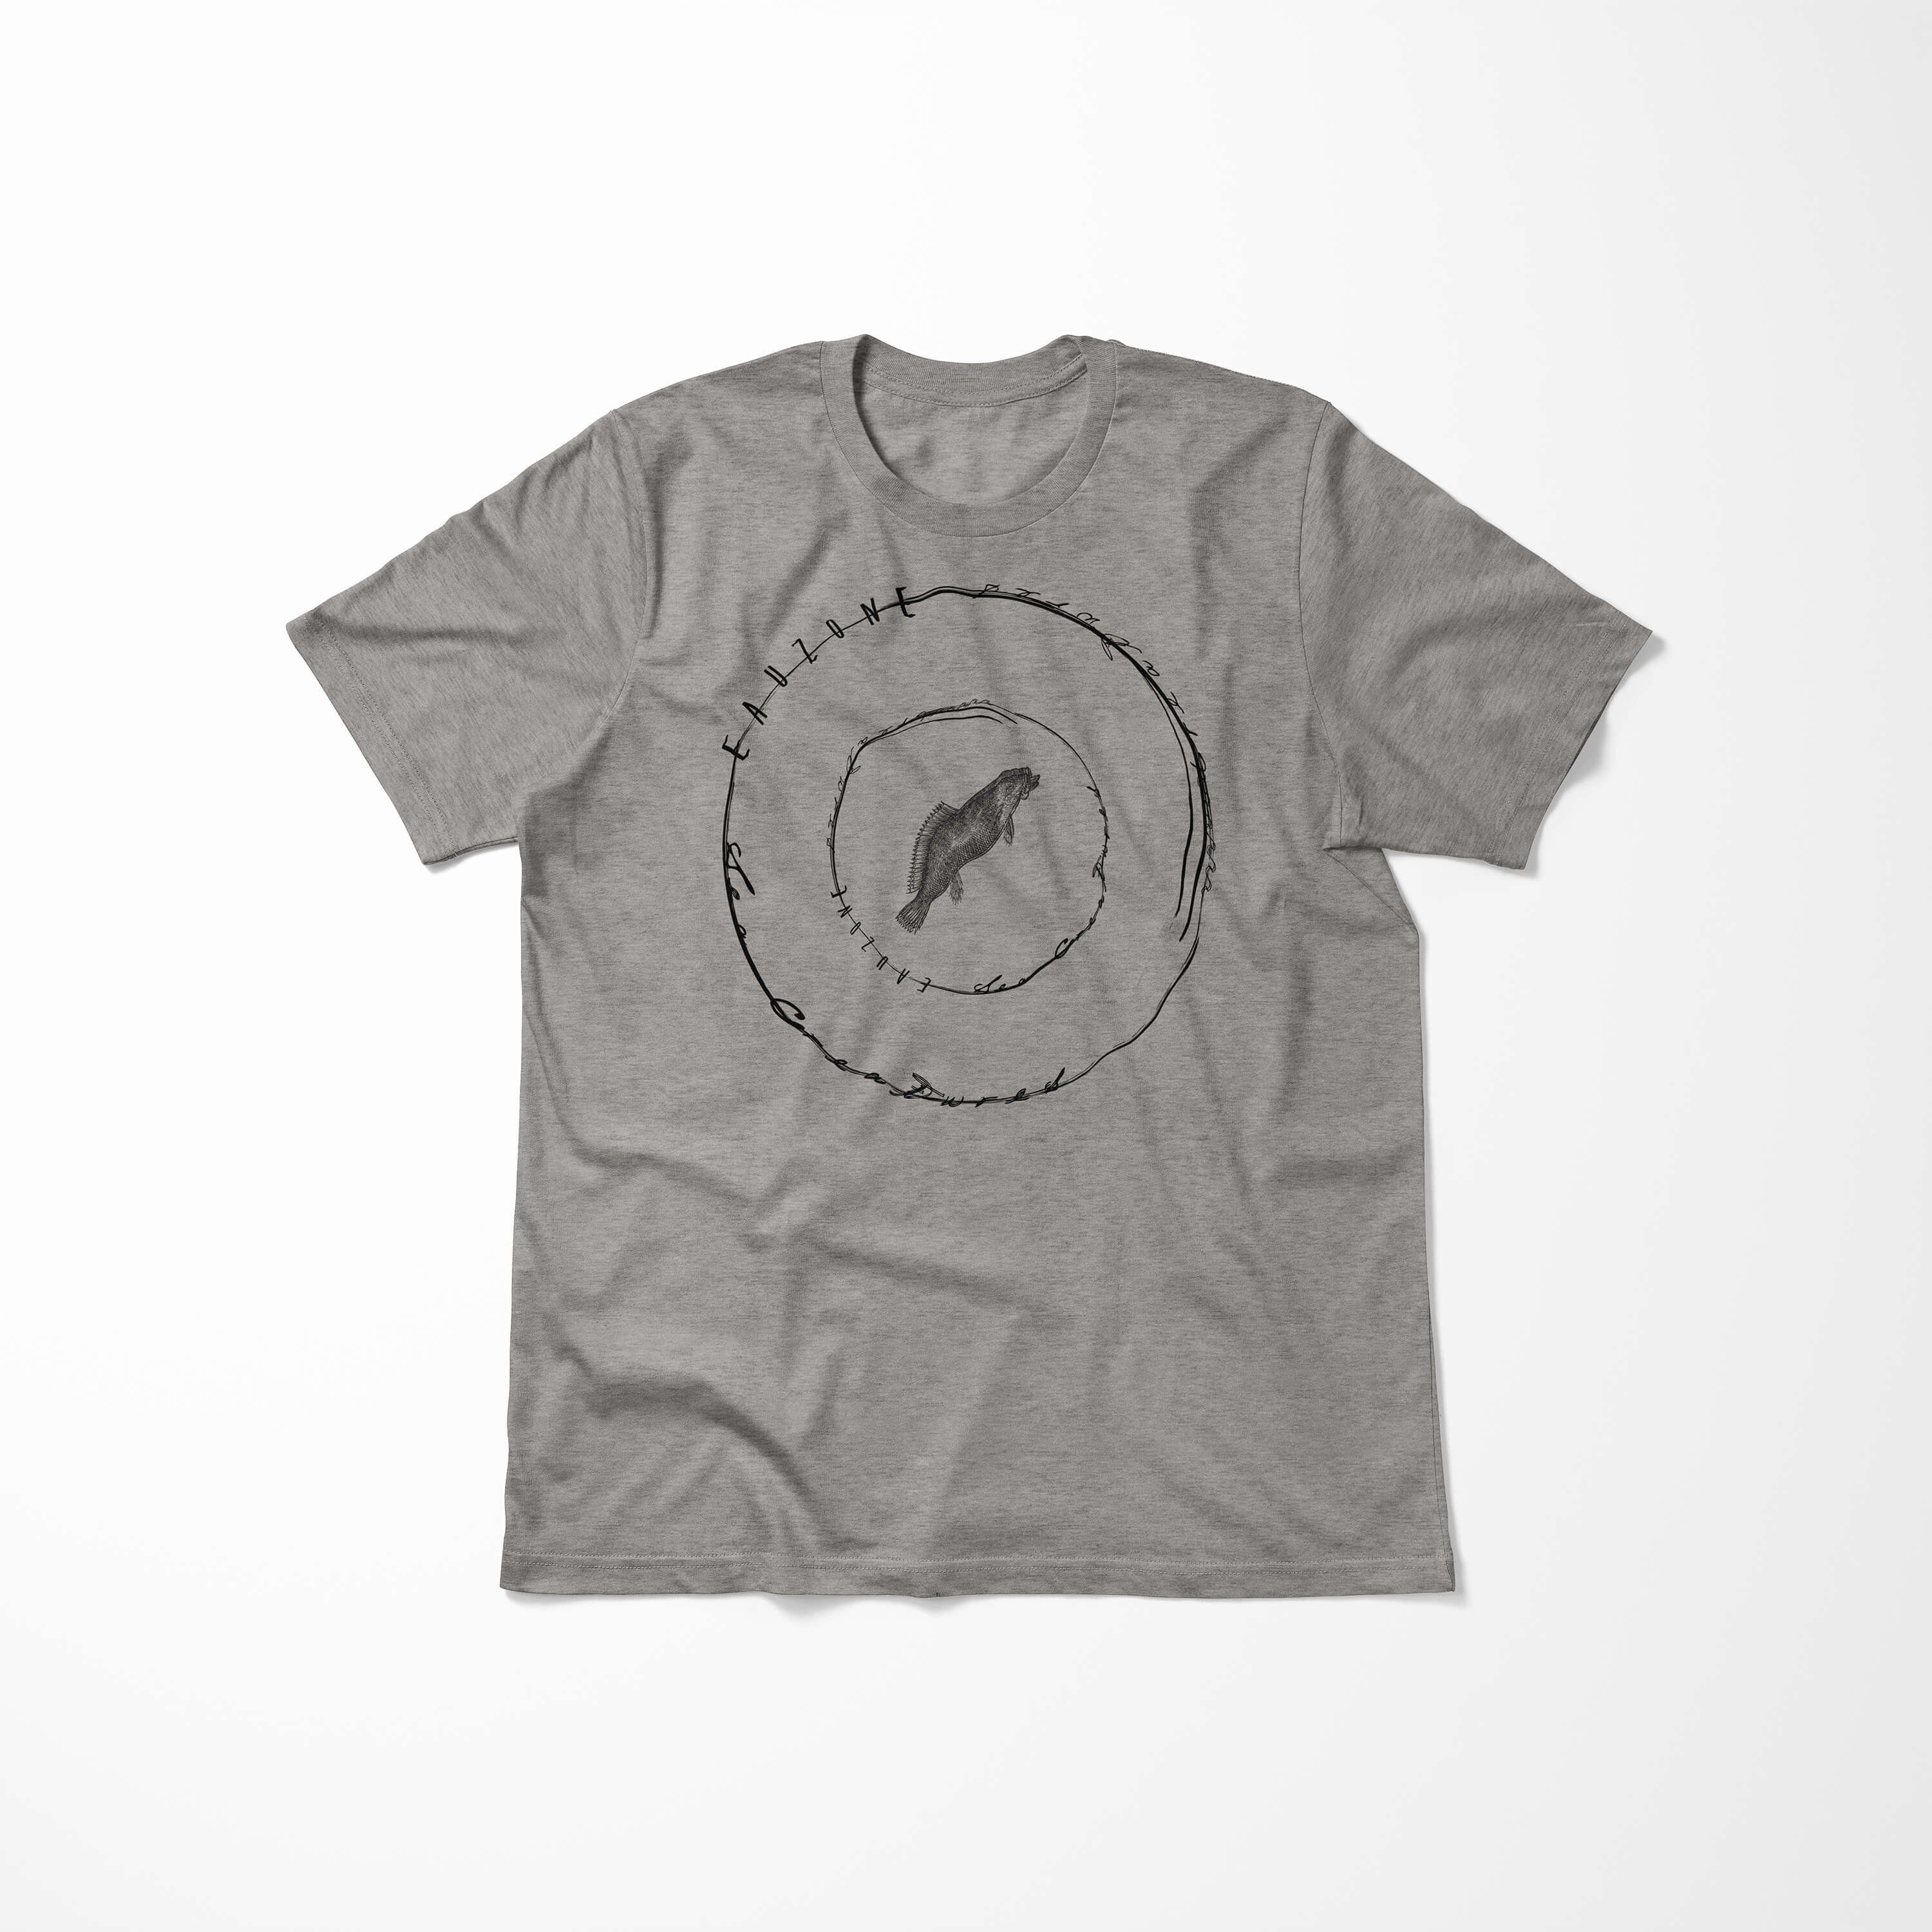 Serie: und Art T-Shirt 016 Ash Sinus Creatures, Sea / Fische feine Tiefsee Sea T-Shirt - Schnitt Struktur sportlicher